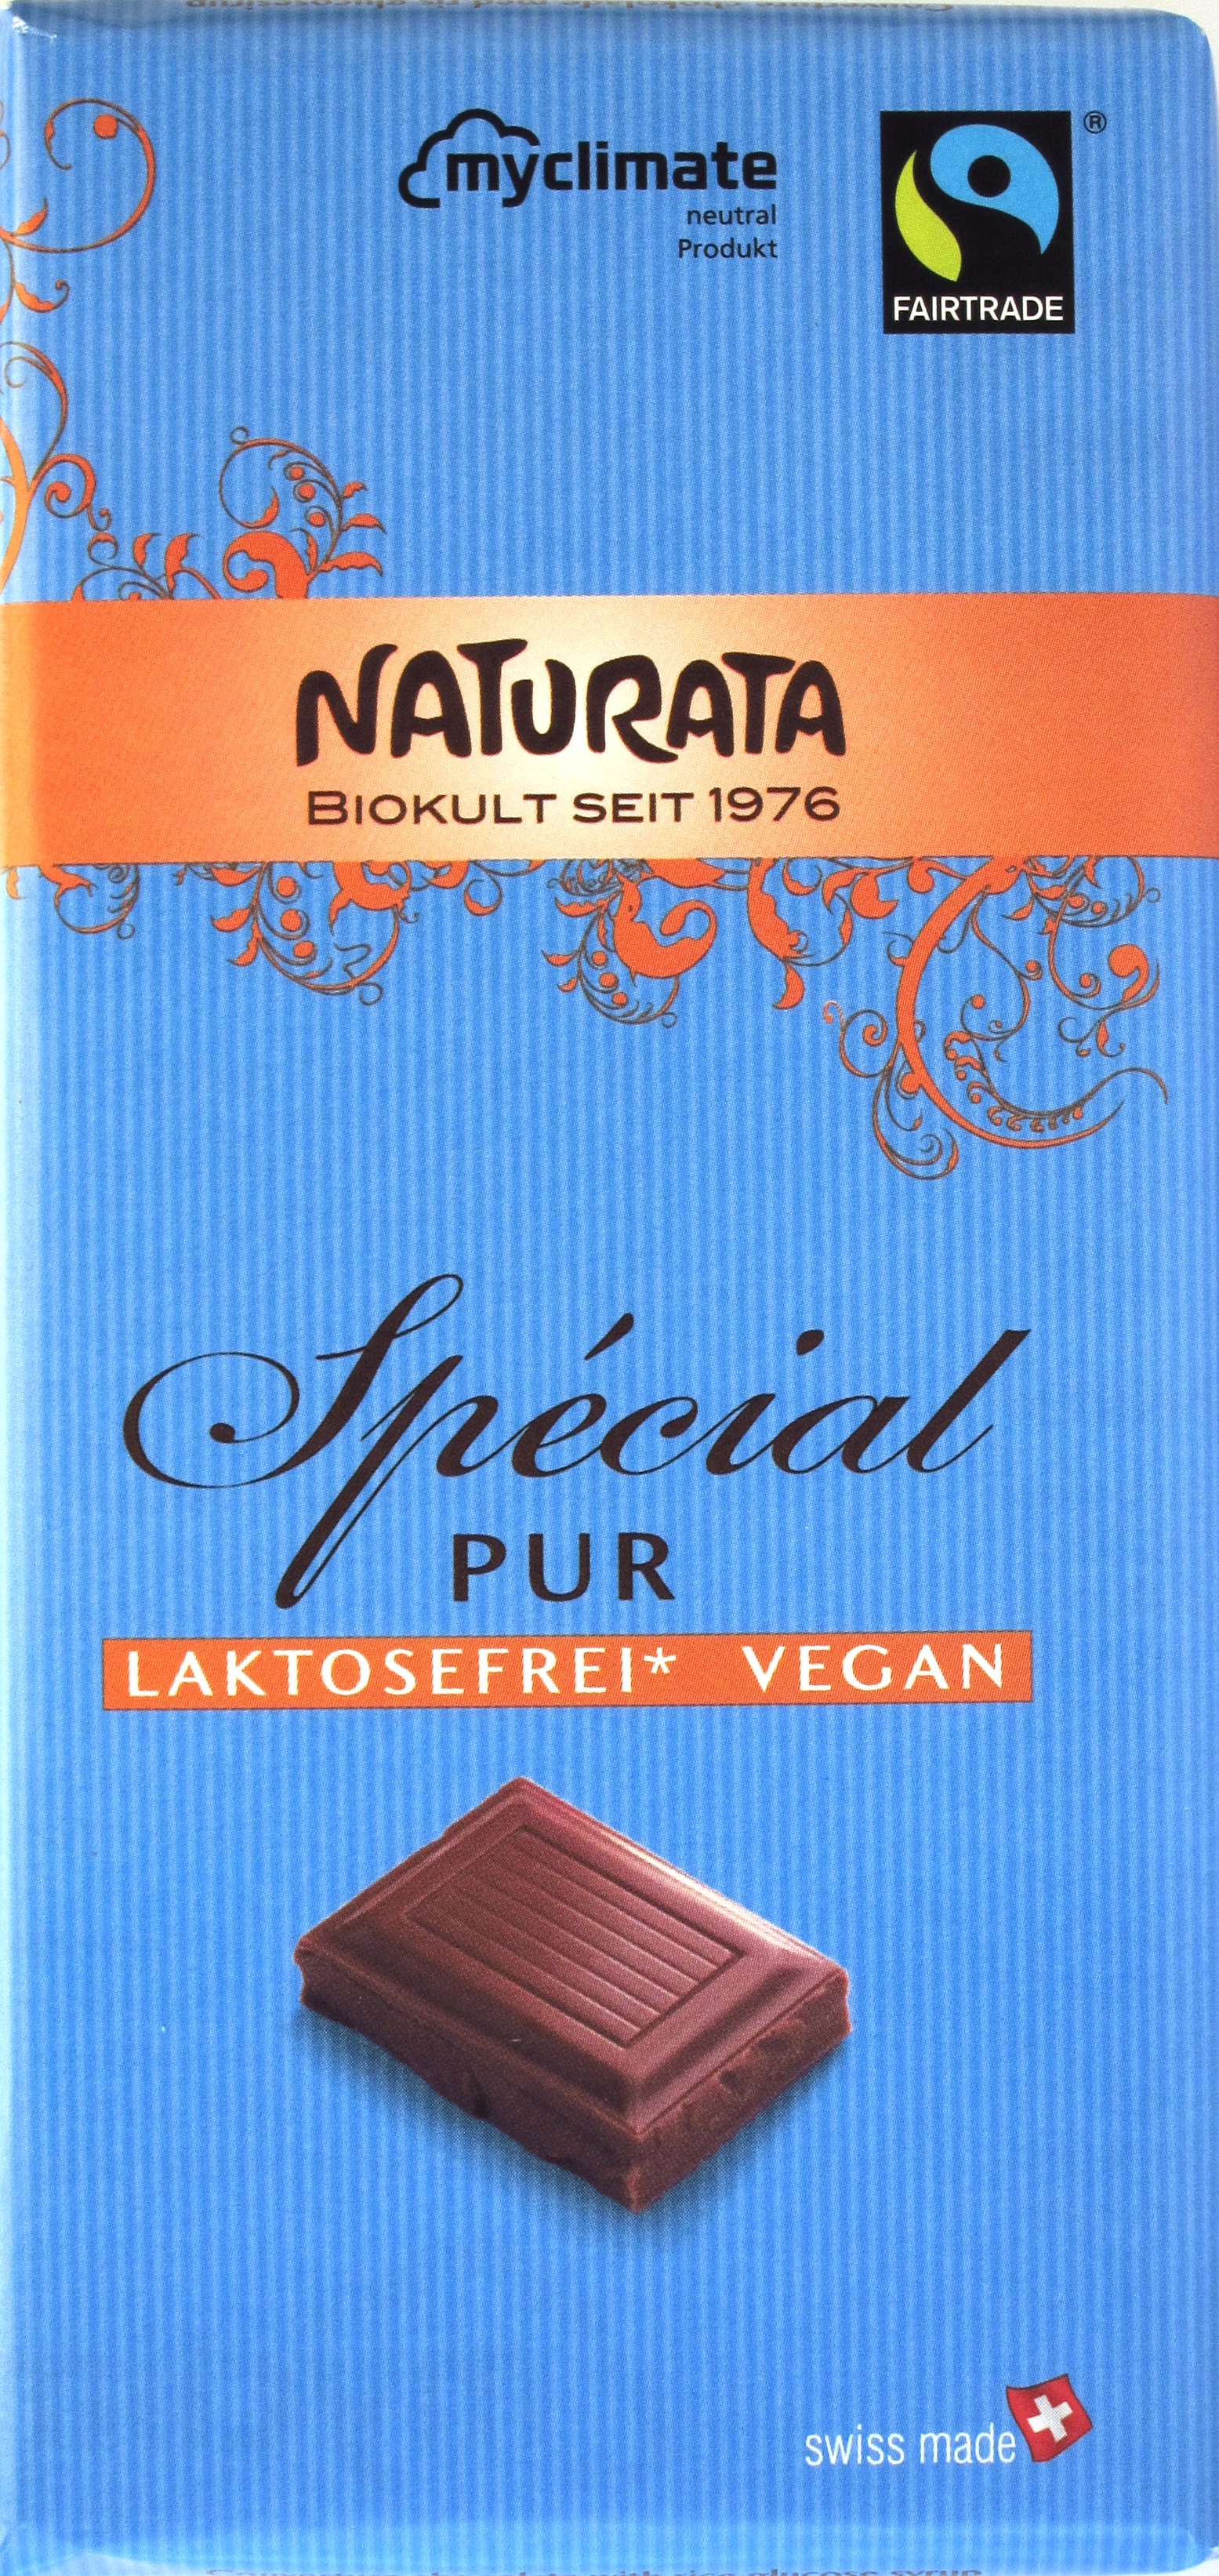 Naturata-Reismilchschokolade 'Spécial Pur'